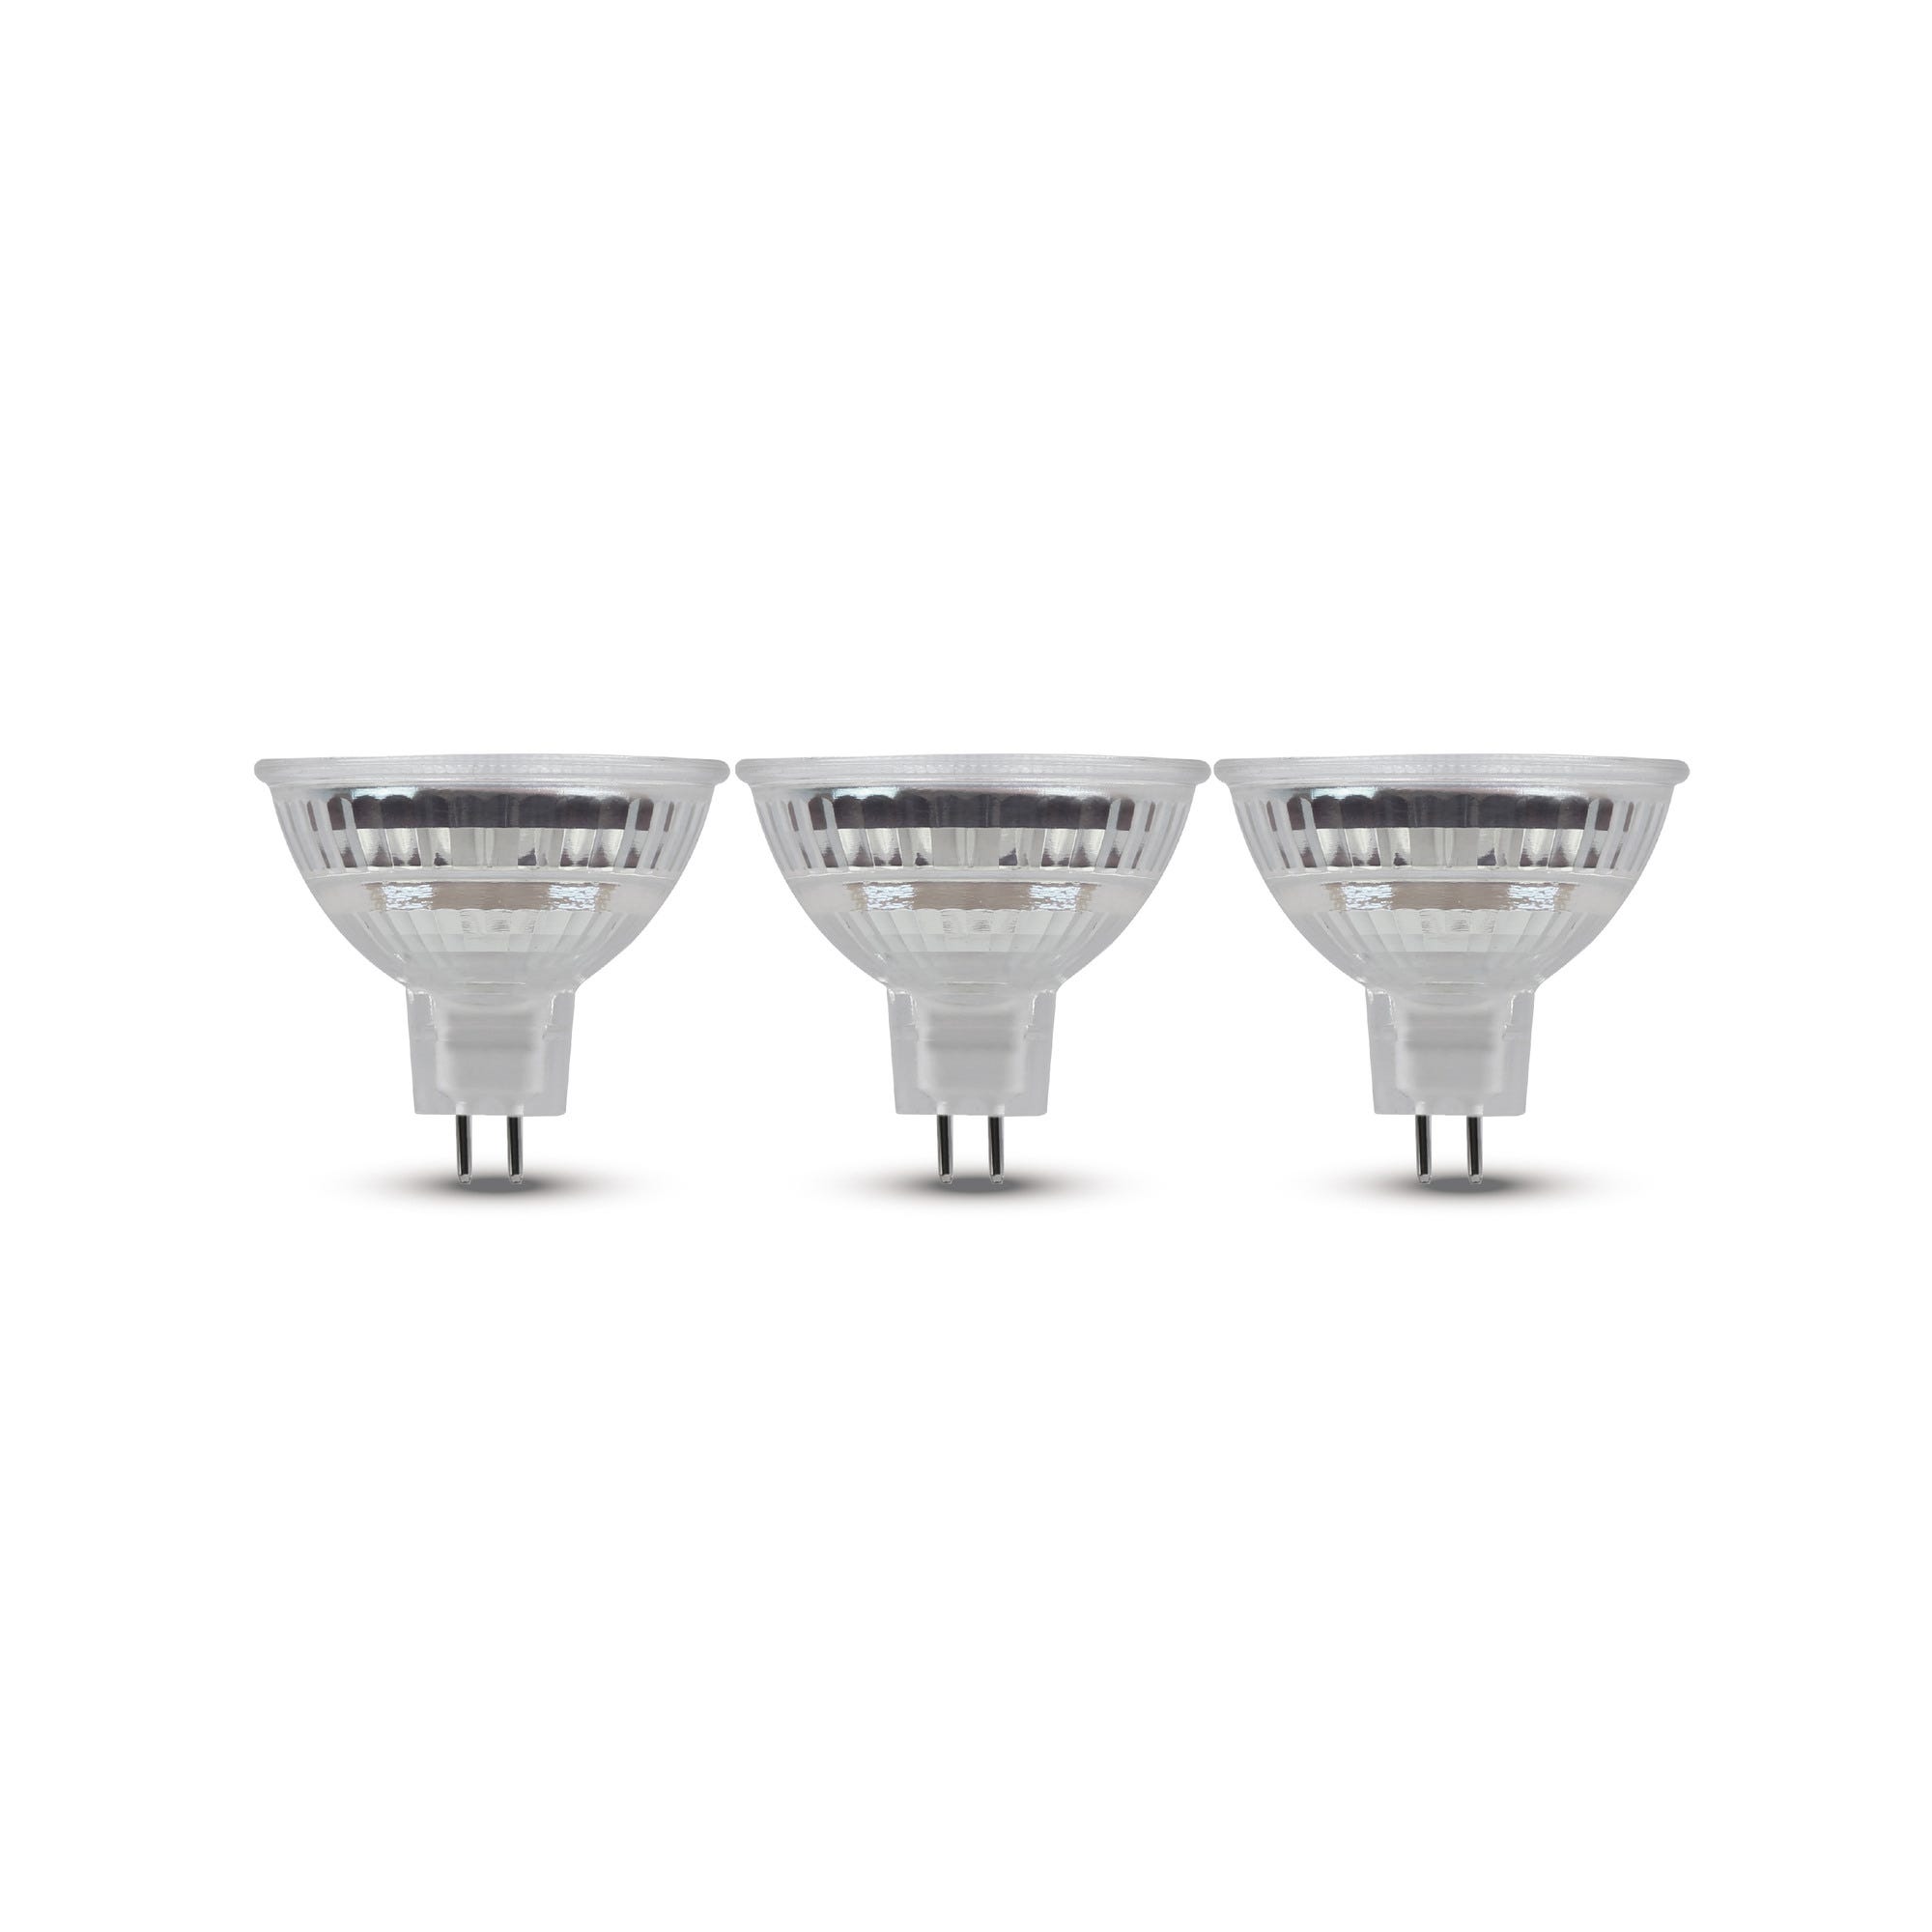 Ampoules LED GU5.3 blanc froid lot de 3 - ZEIGER 0